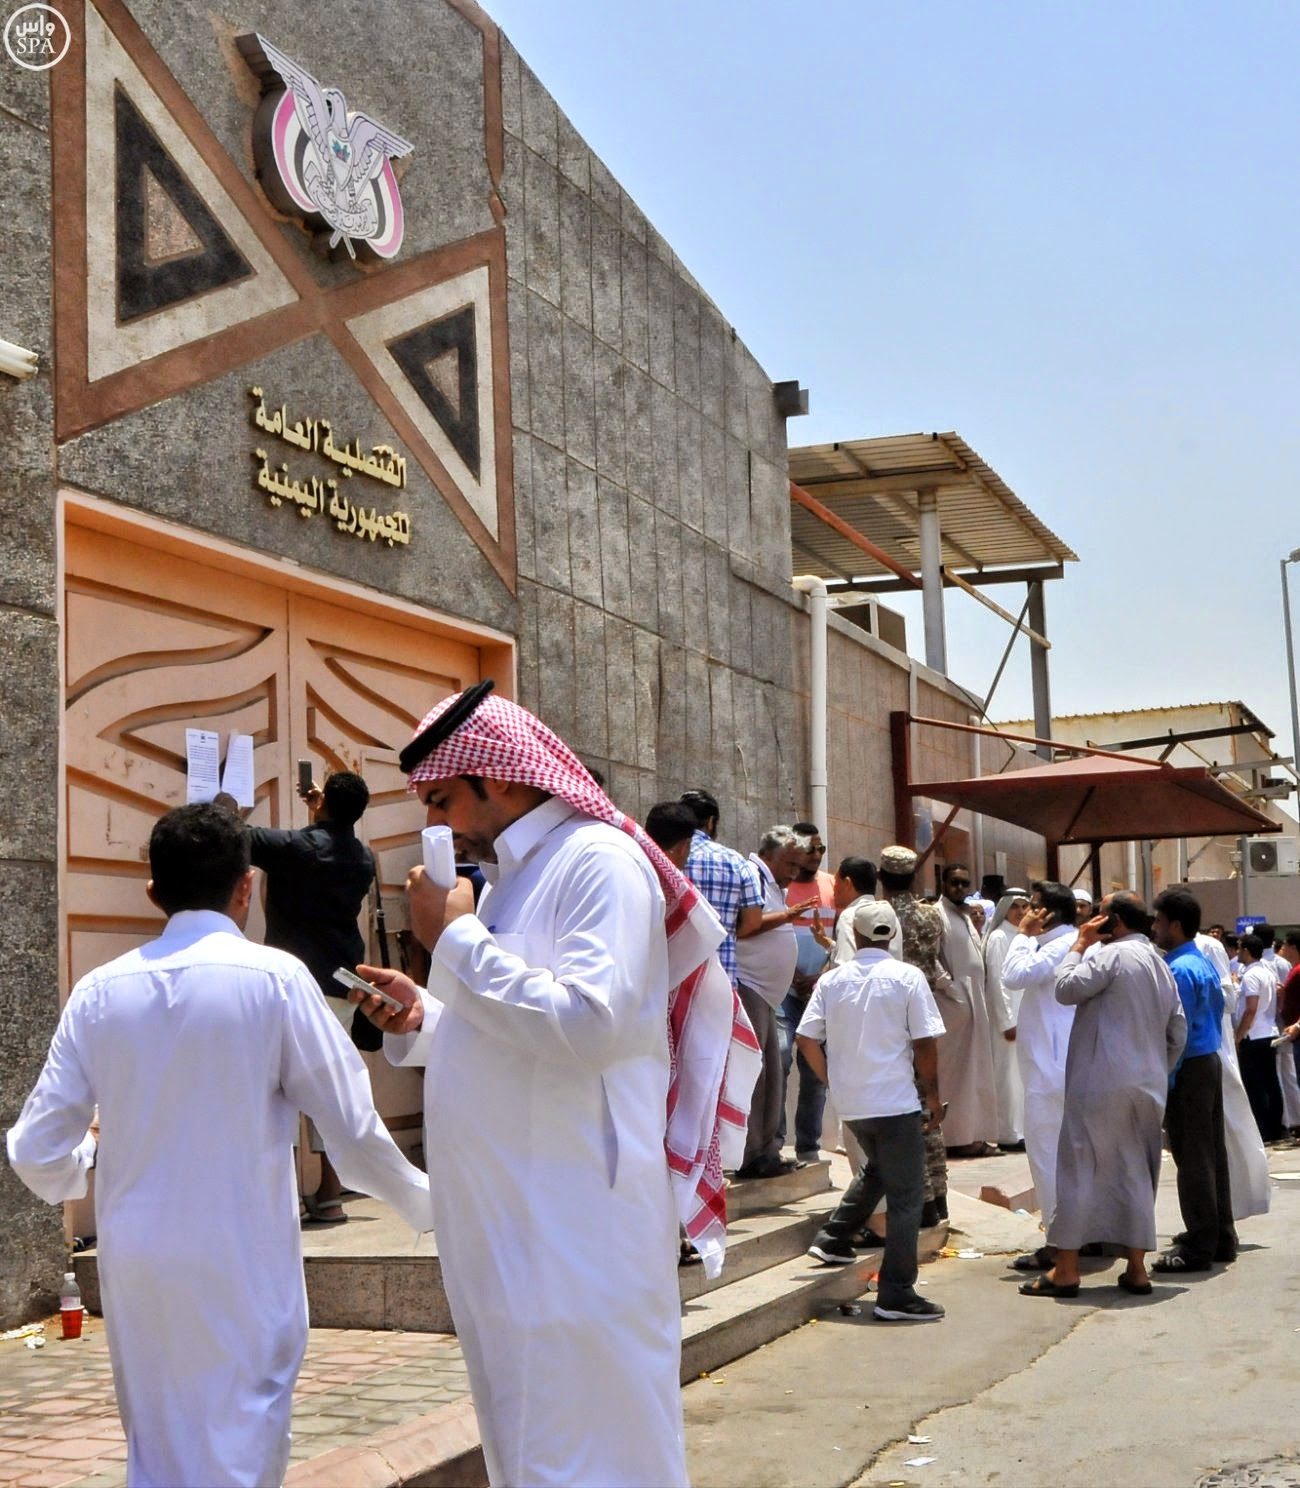 السفارة اليمنية في الرياض تقول إن قراراً صدر بإيقاف مندوب قنصلية جدة لدى المنفذ الحدودي في شرورة